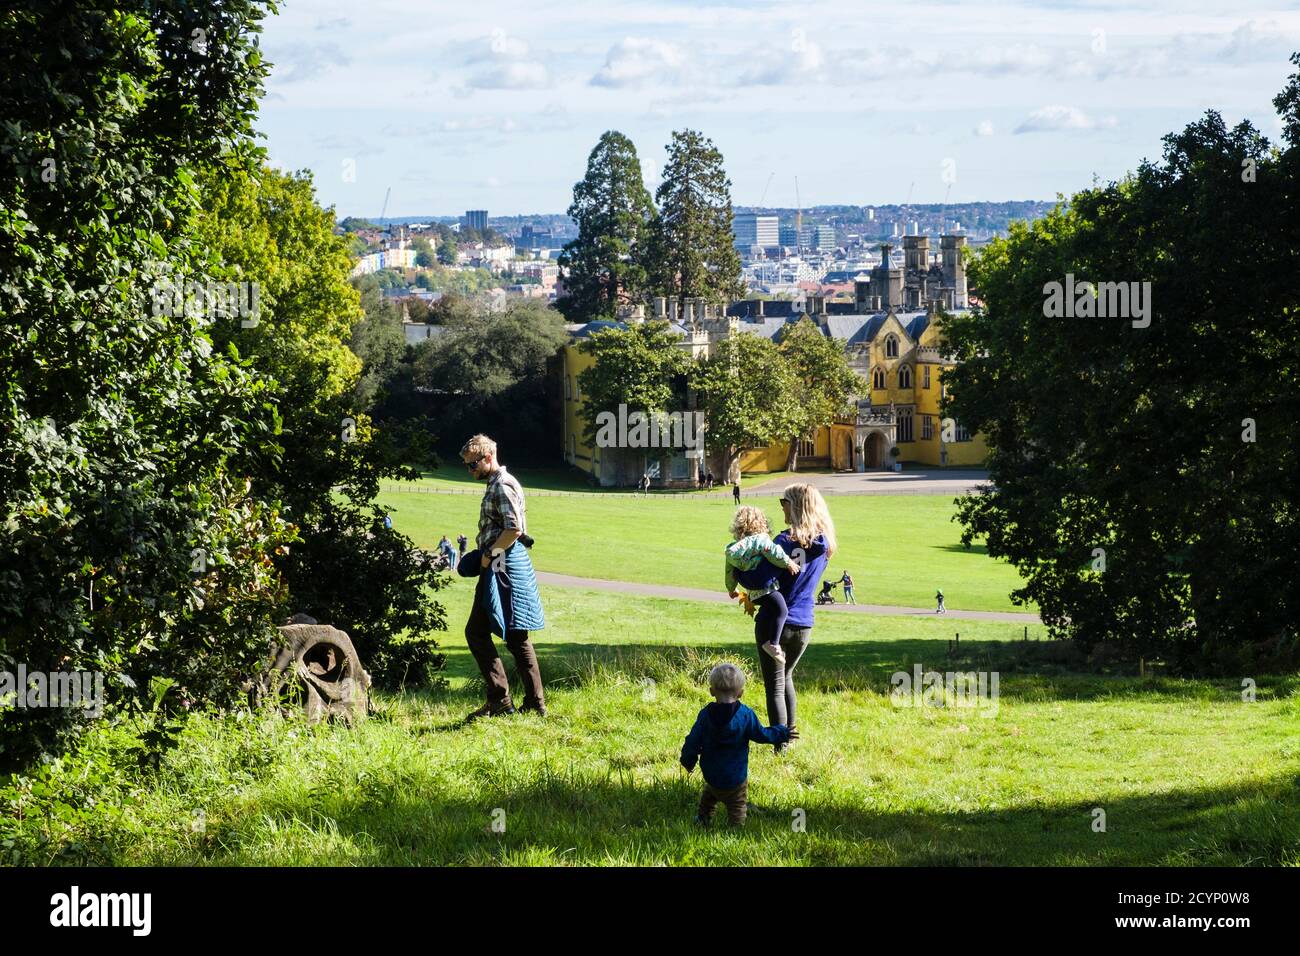 Maman papa avec deux jeunes enfants enfants petits enfants qui marchent dans un parc lors d'une journée en famille à Ashton court, Bristol, Avon, Angleterre, Royaume-Uni, Grande-Bretagne Banque D'Images